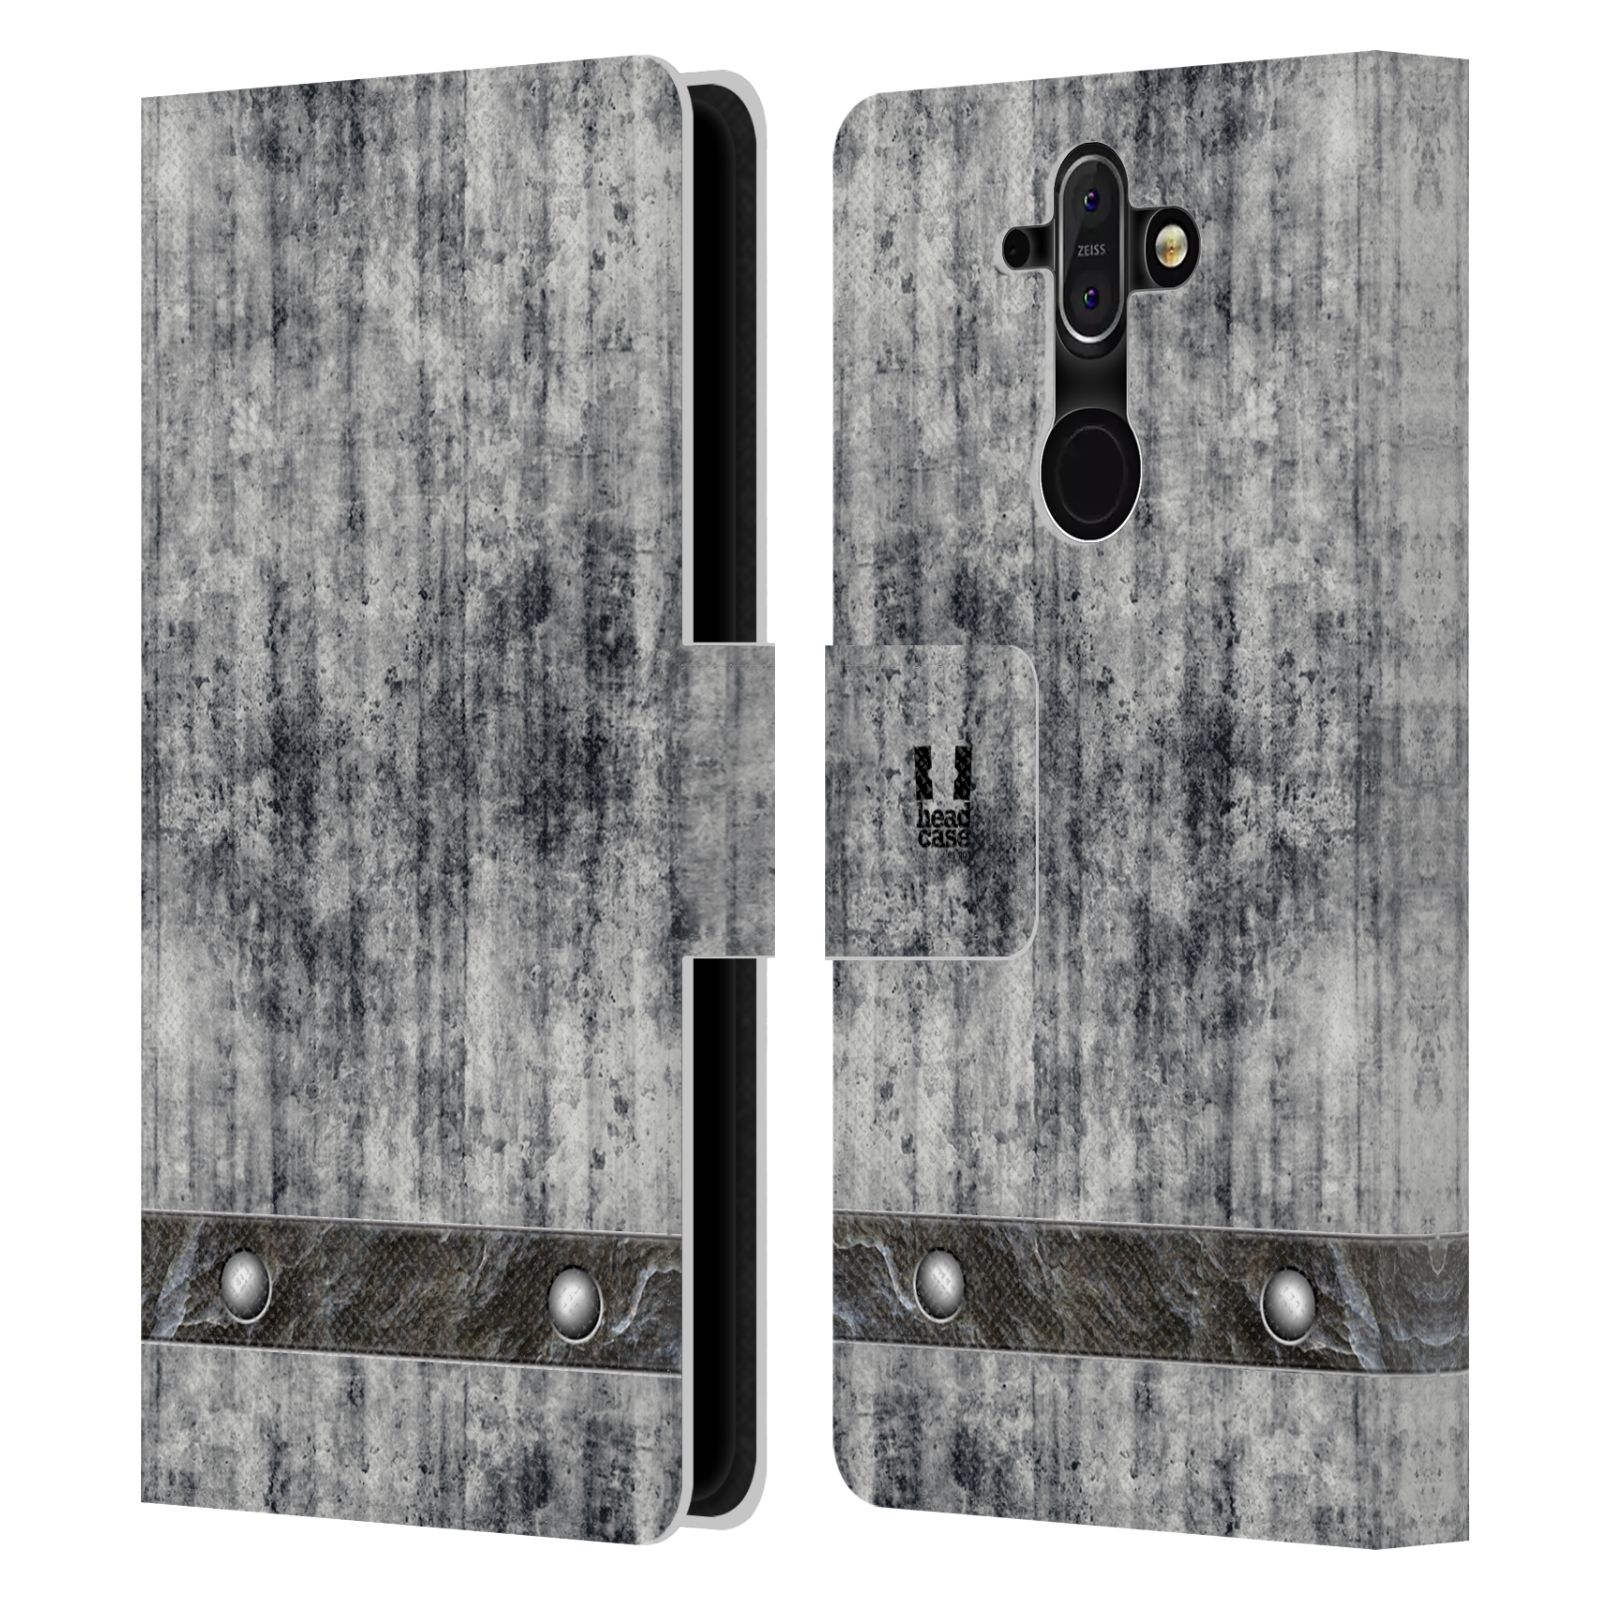 Pouzdro pro mobil Nokia 8 Sirocco - Stavební textura šedý beton